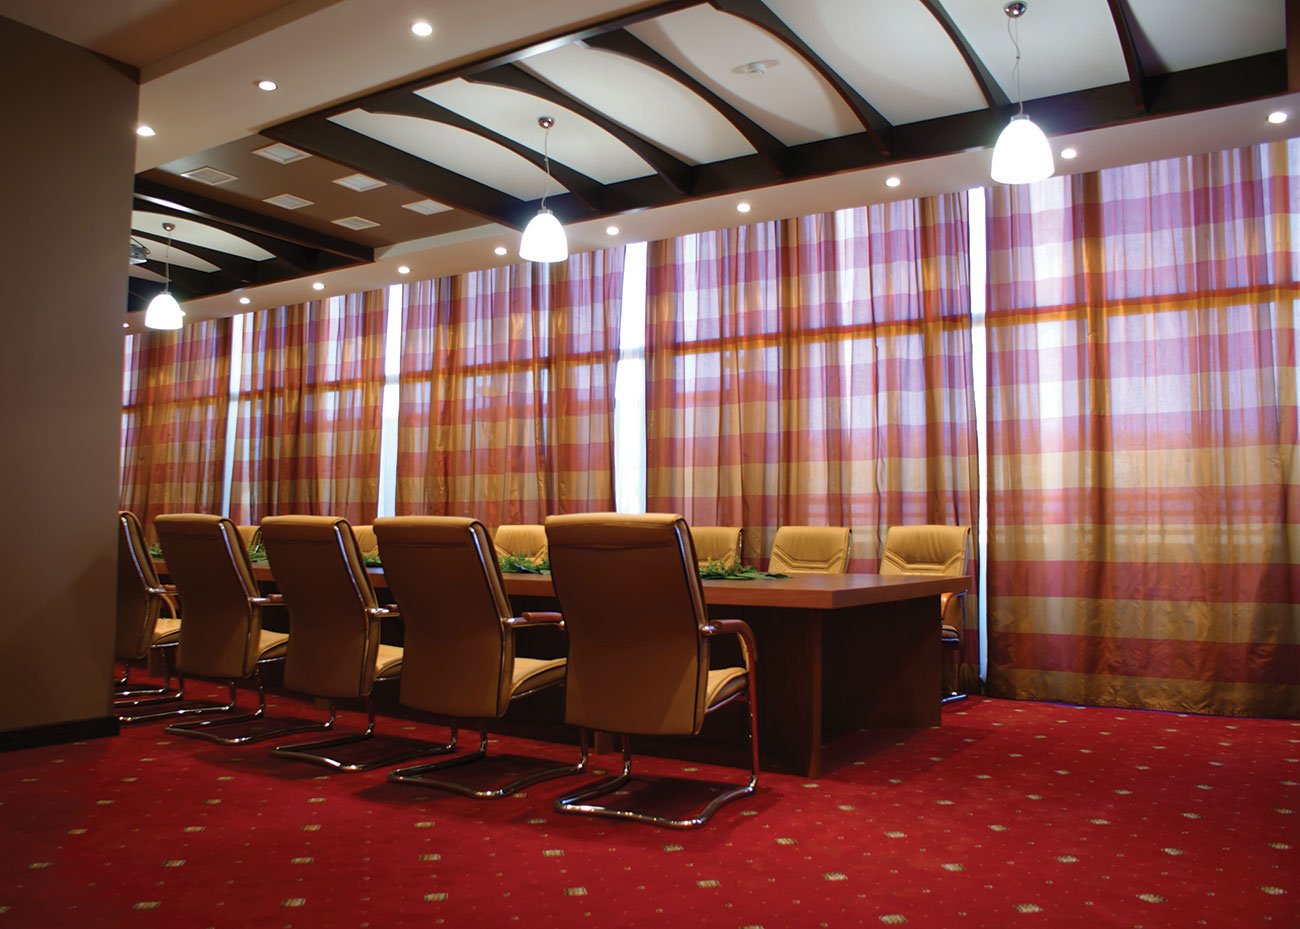 фото интерьера конференц зала выдержаного в современном стиле с элементами этники